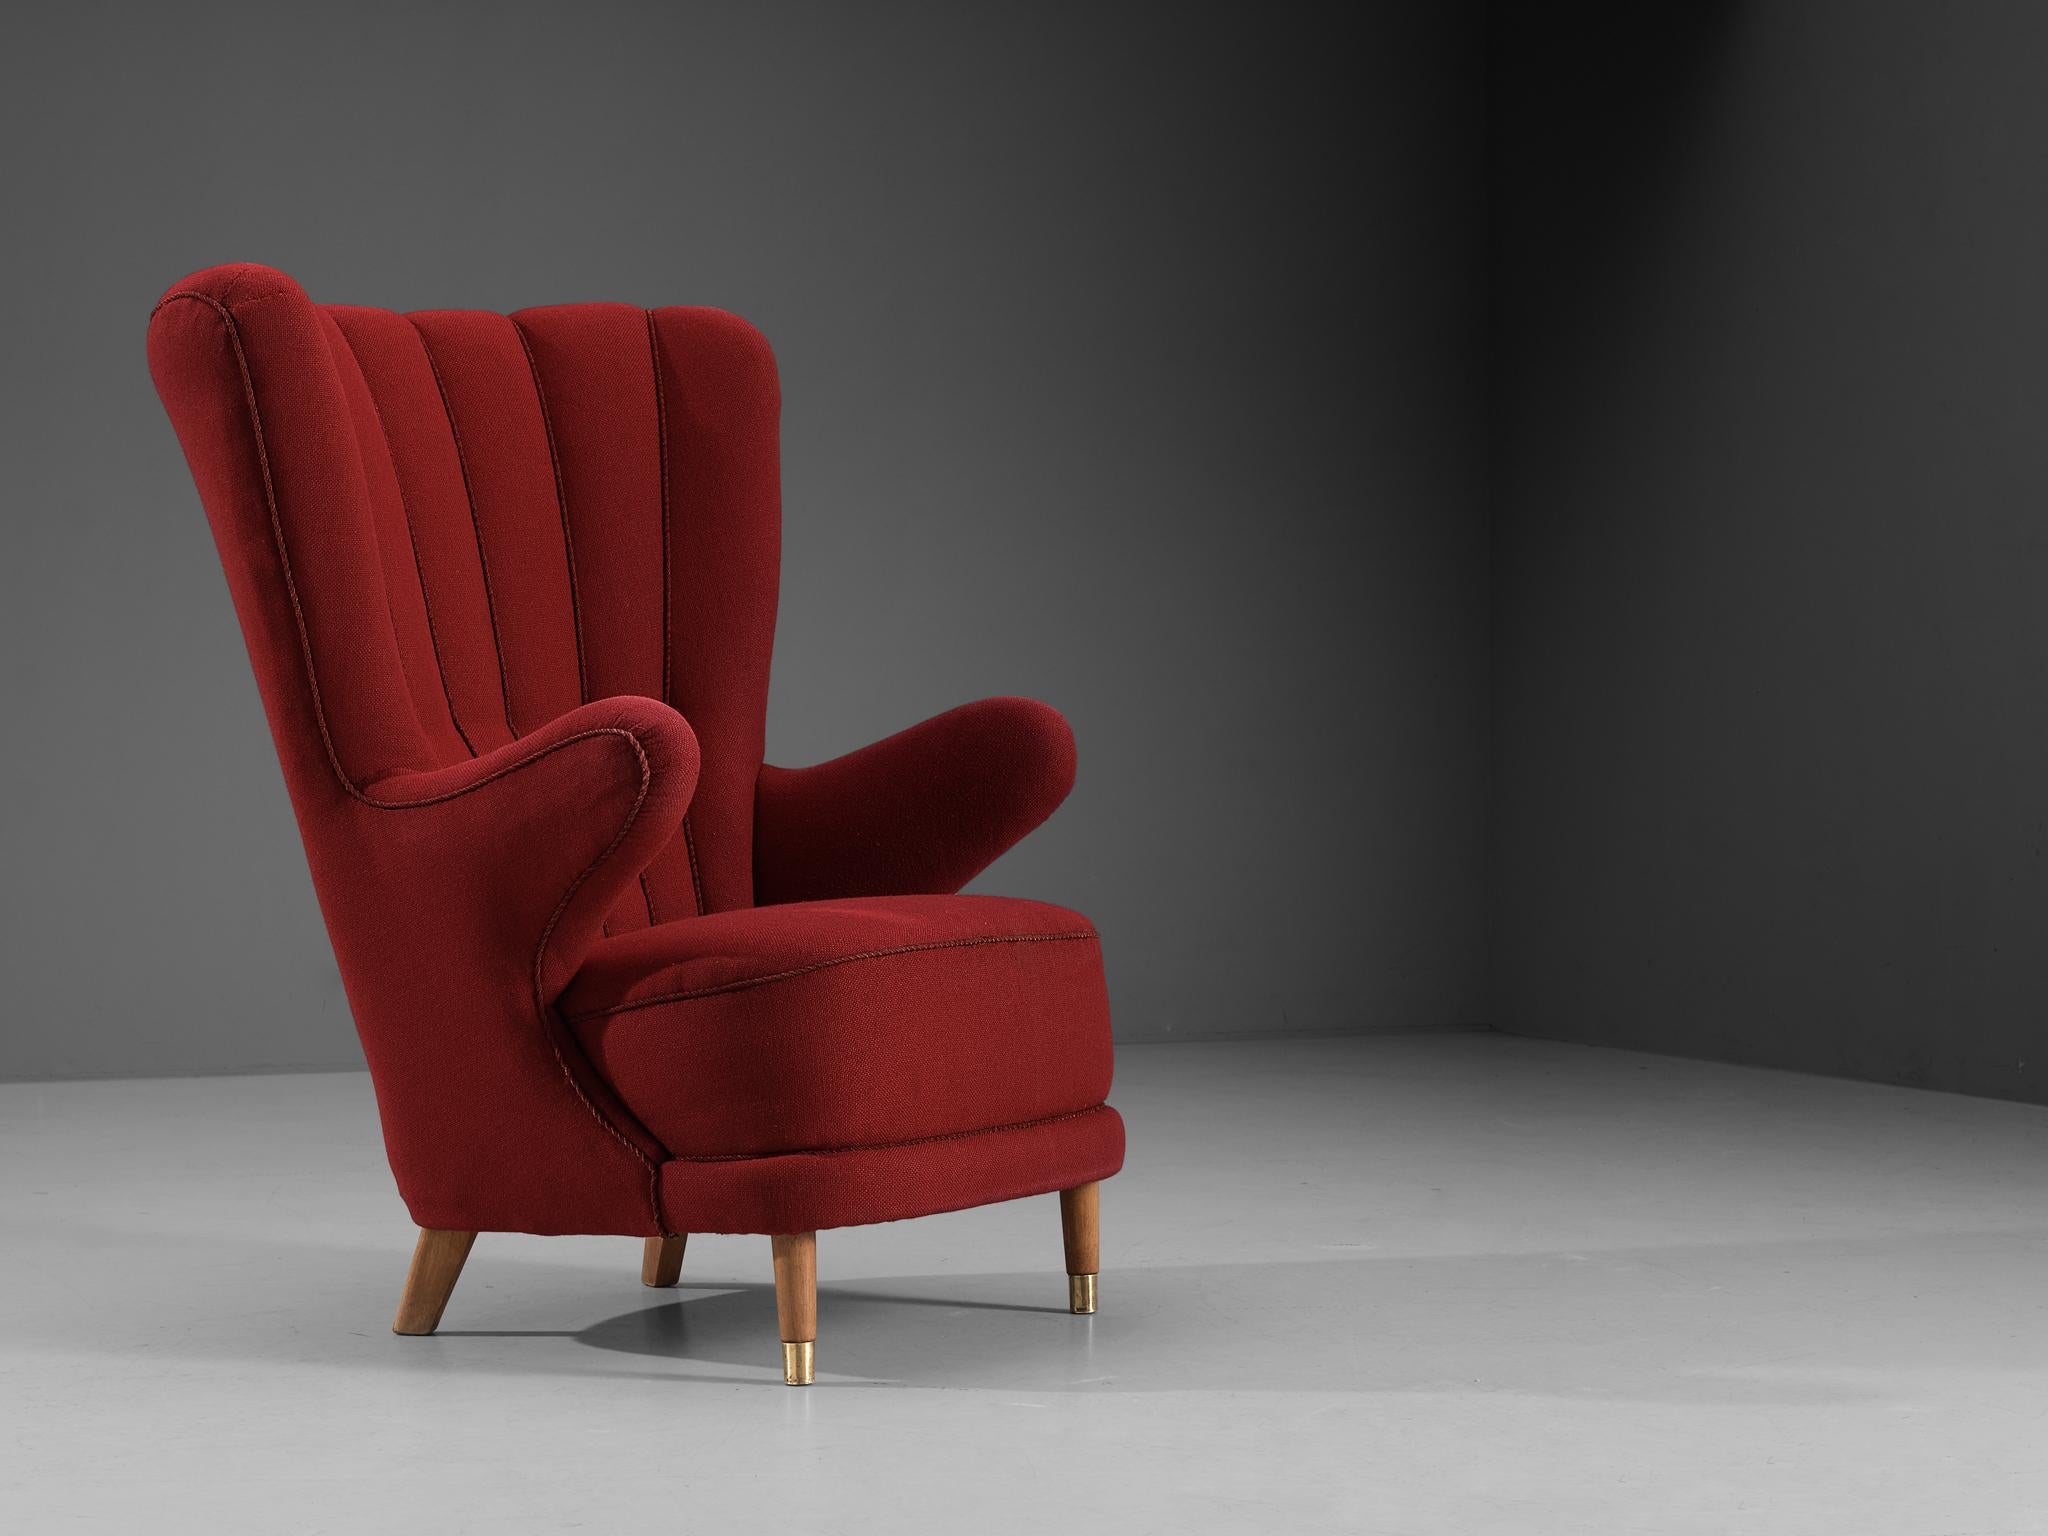 Schiller Polstermøbler, chaise longue, tissu, hêtre, laiton, Danemark, circa. 1950 

Ce fauteuil bien conçu a été présenté au salon du meuble de l'Association des fabricants à Fredericia en 1954. Le design est basé sur une construction solide aux